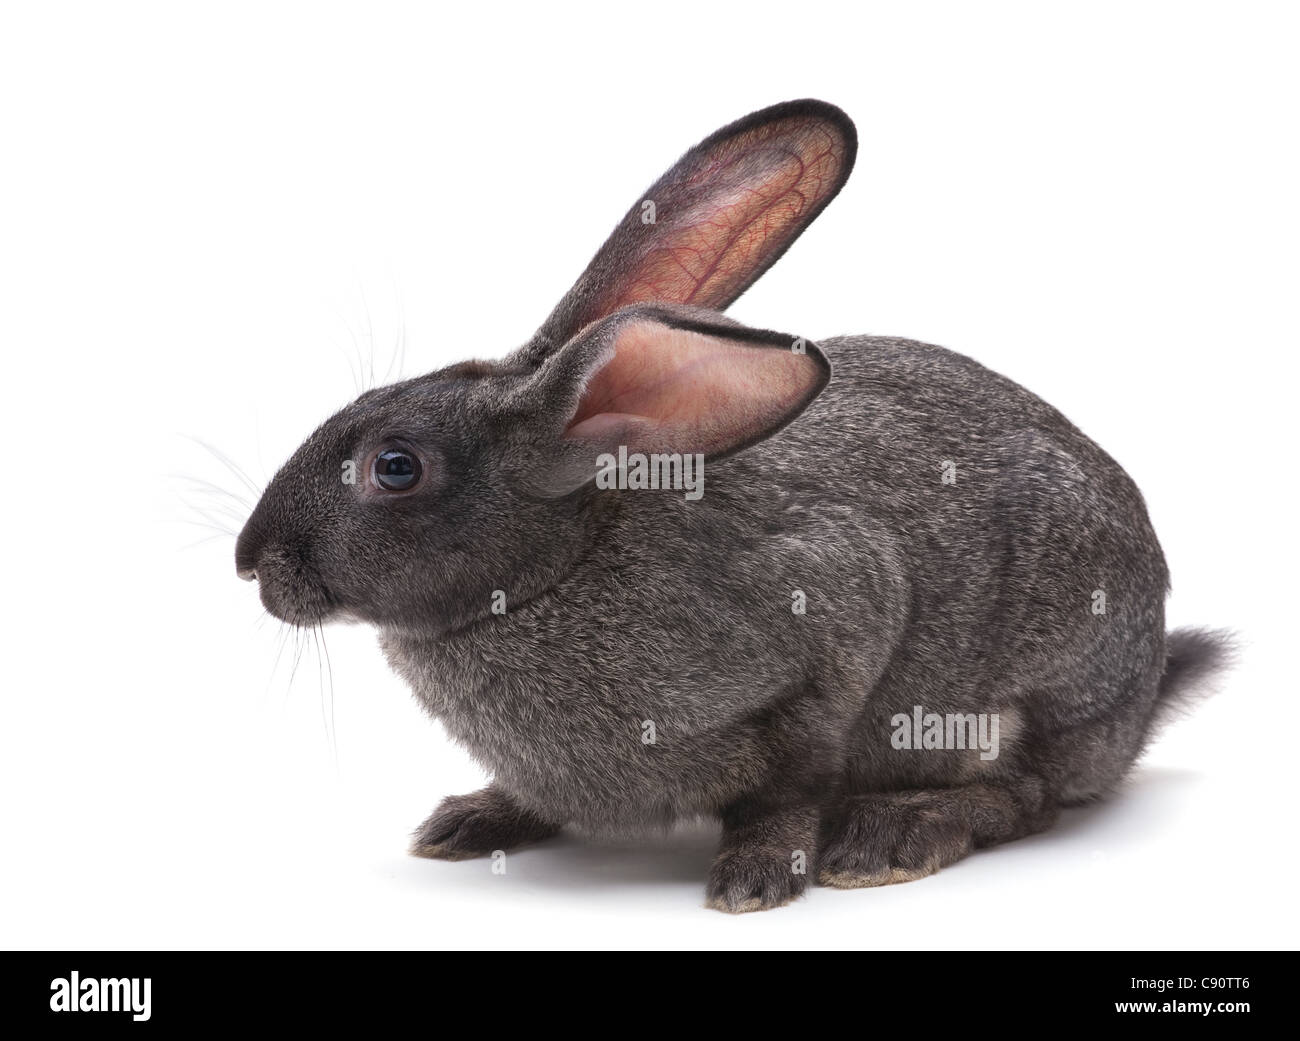 Rabbit farm animal closeup on white background Stock Photo